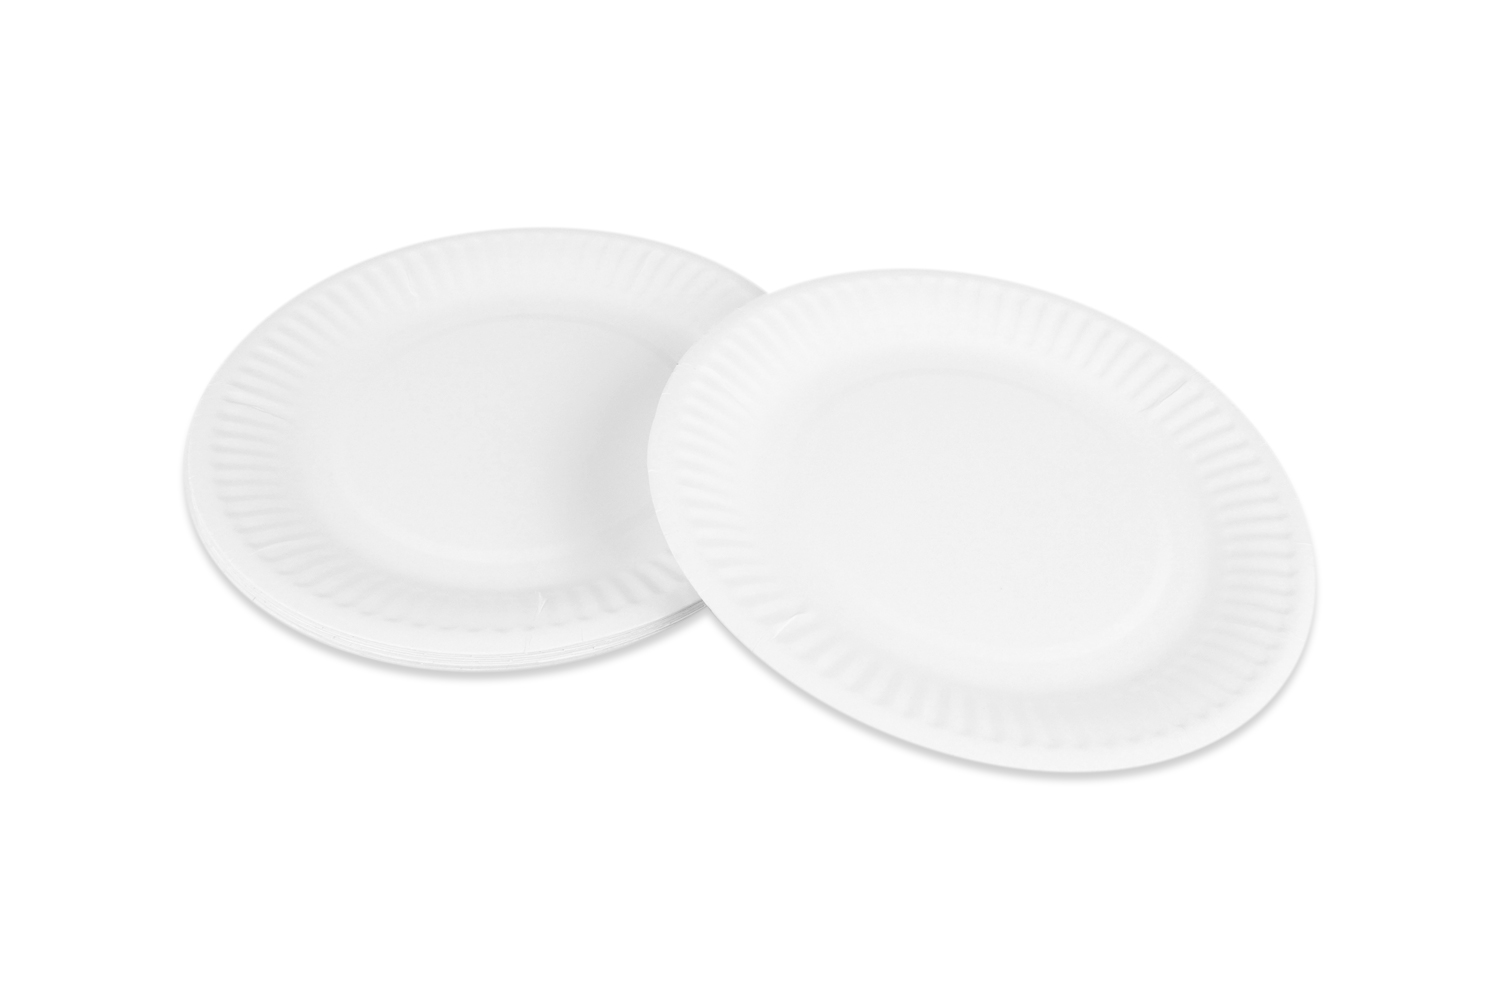 Petites assiettes en carton blanc - 20 pièces - Plateaux en carton